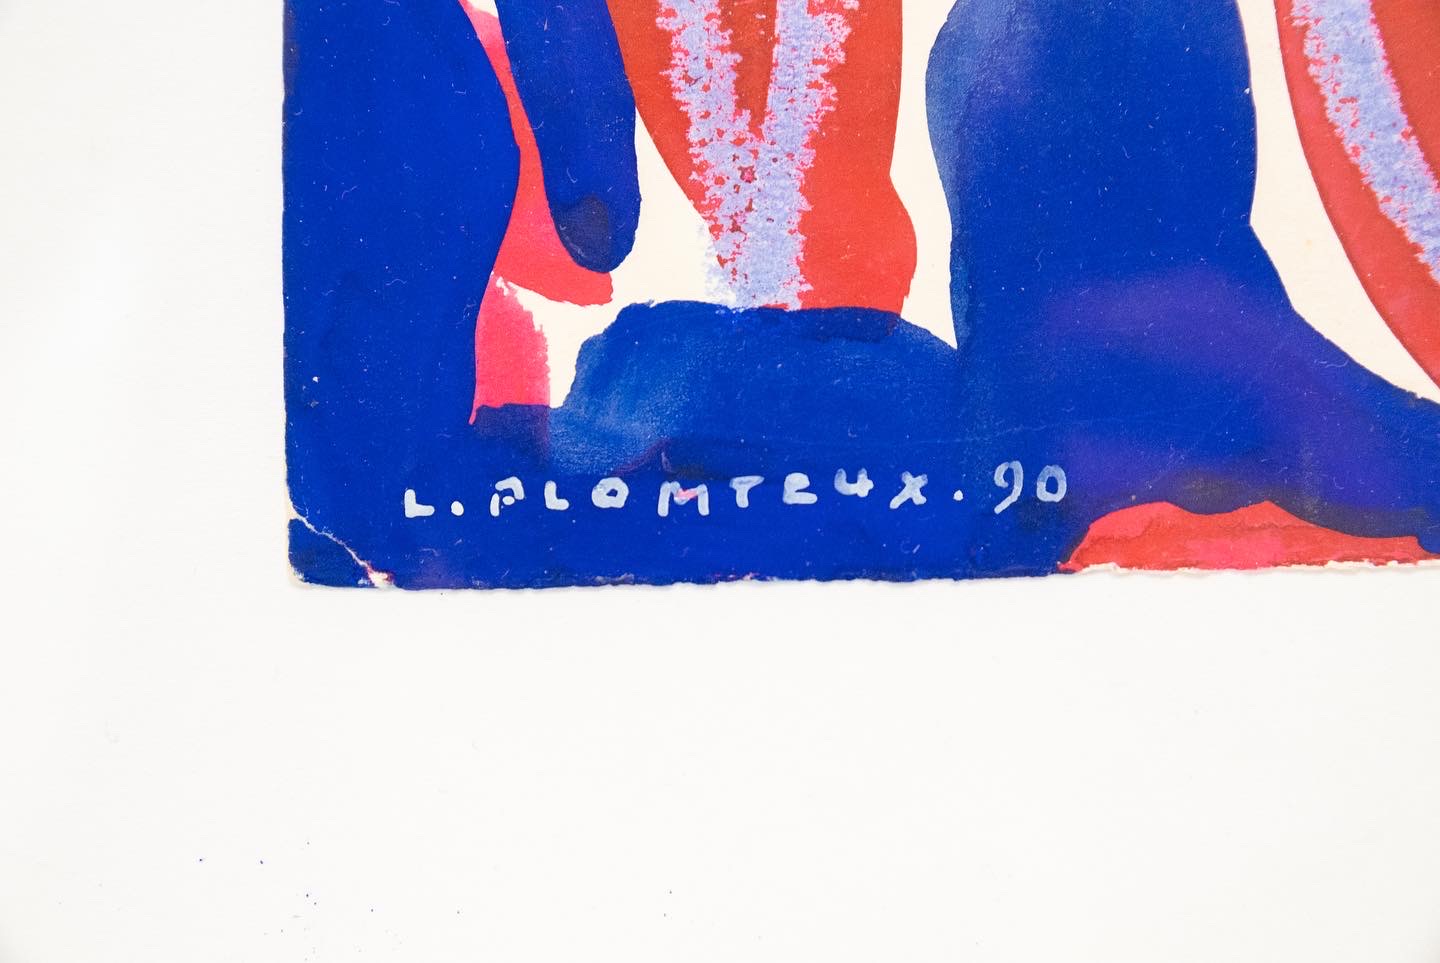 Leopold-plomteux-realite-cobra-peintre-liegeois-abstrait-collection-aurore-morisse-chestret5-liège-marchand-art-affaire-conclue-paris-liège43